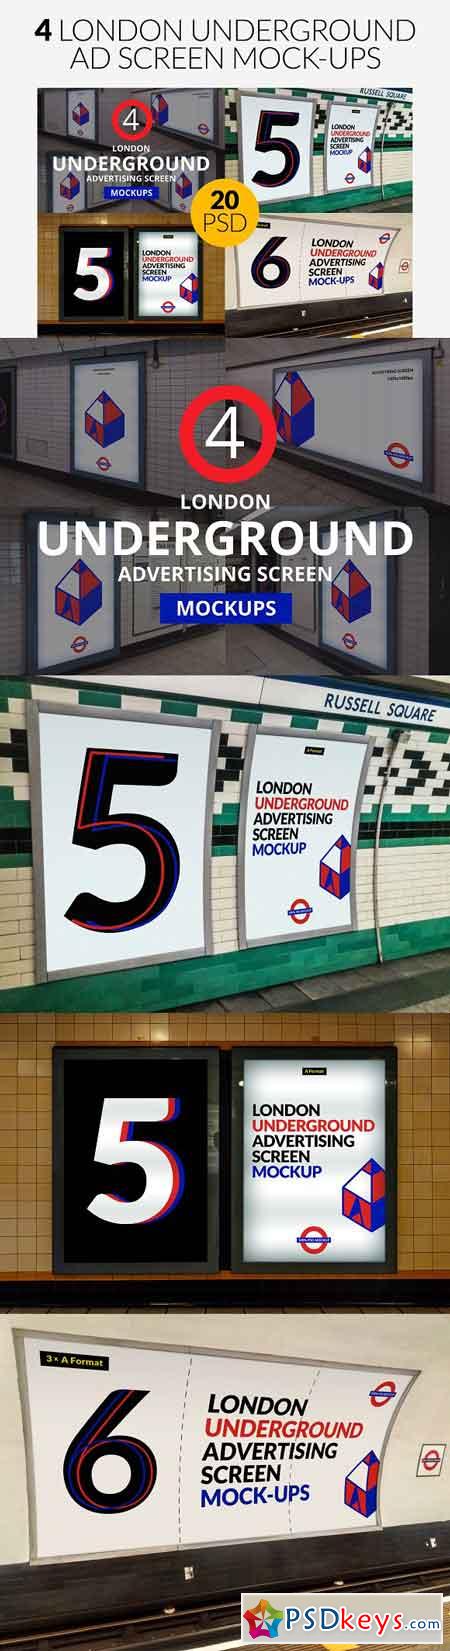 4 London Underground Mock-Ups Bundle 2532376